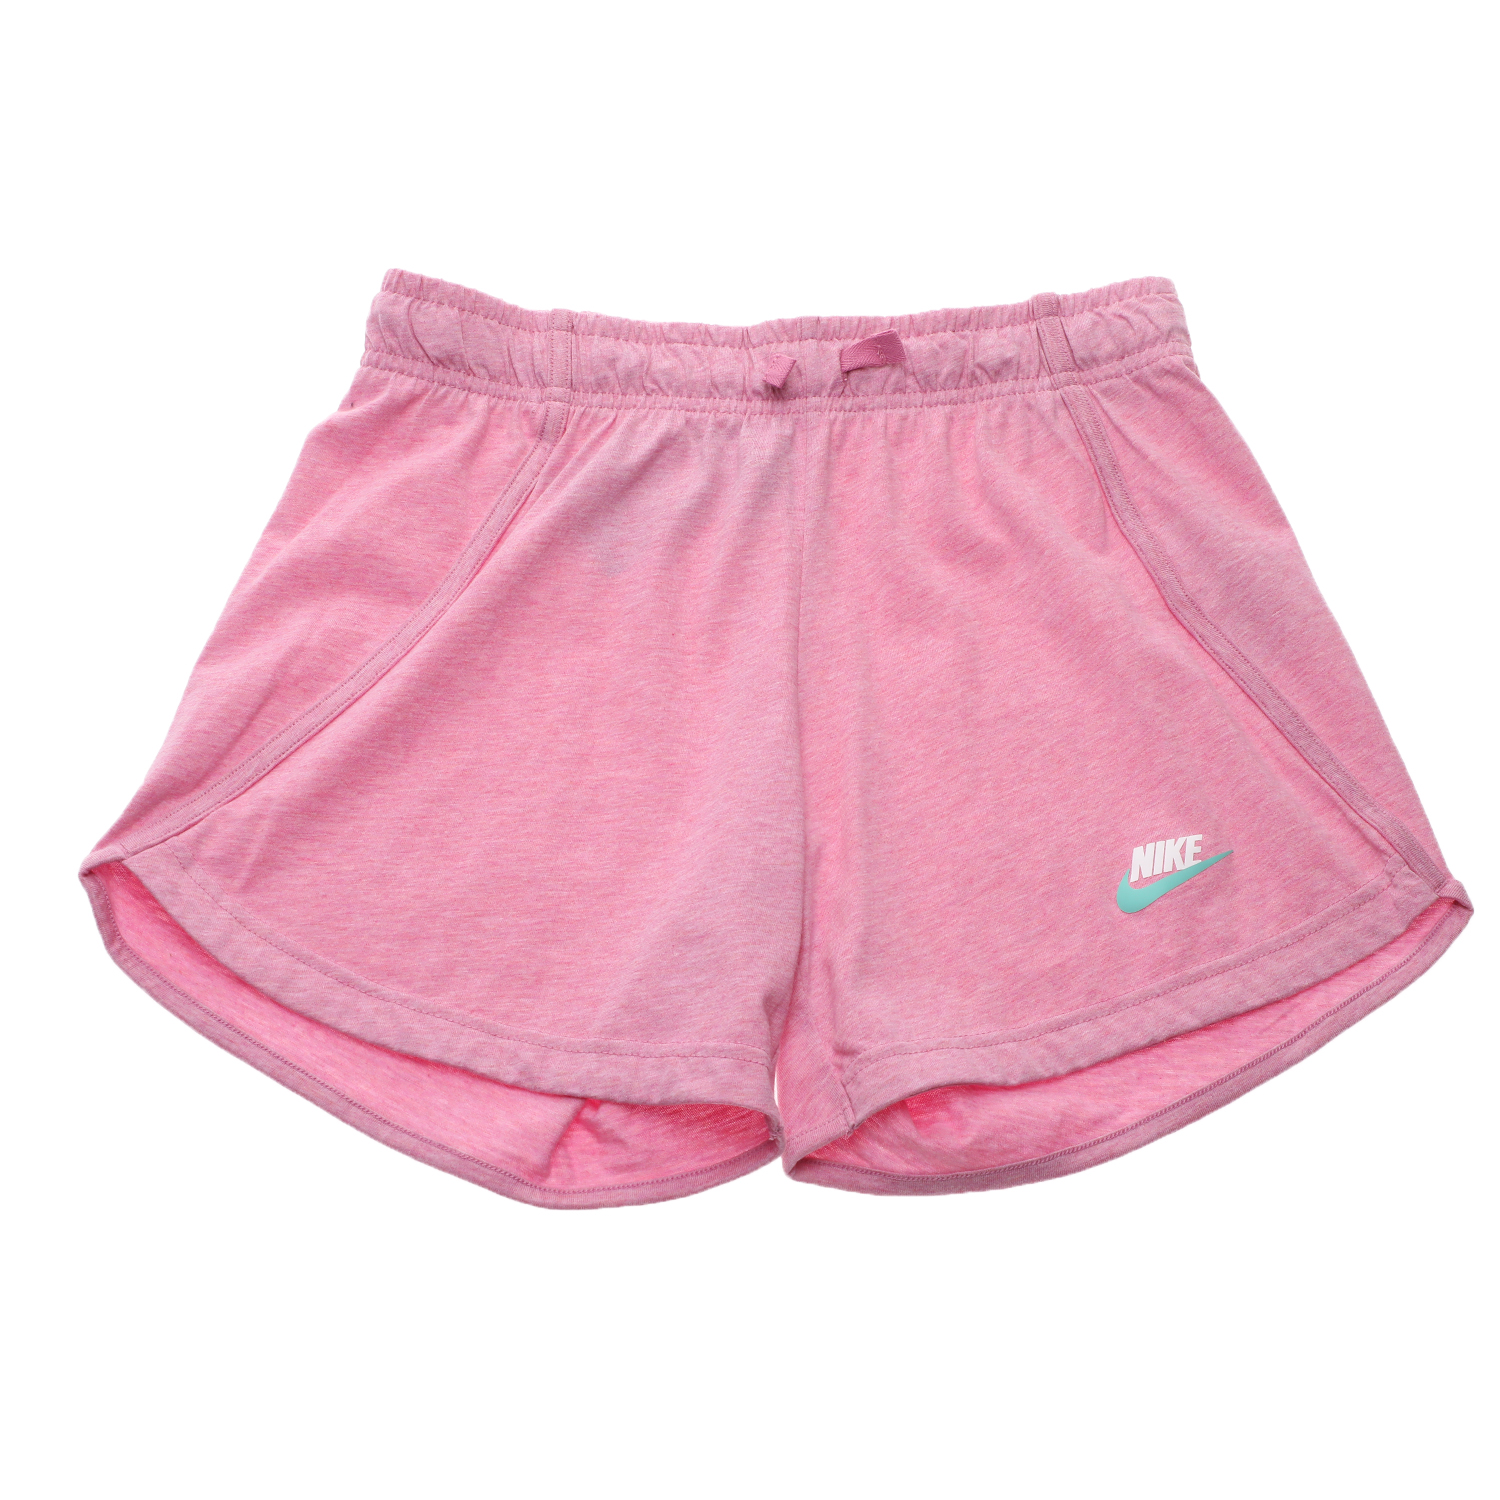 Παιδικά/Girls/Ρούχα/Σορτς-Βερμούδες NIKE - Παιδικό σορτς NIKE SW SHORT JERSEY ροζ